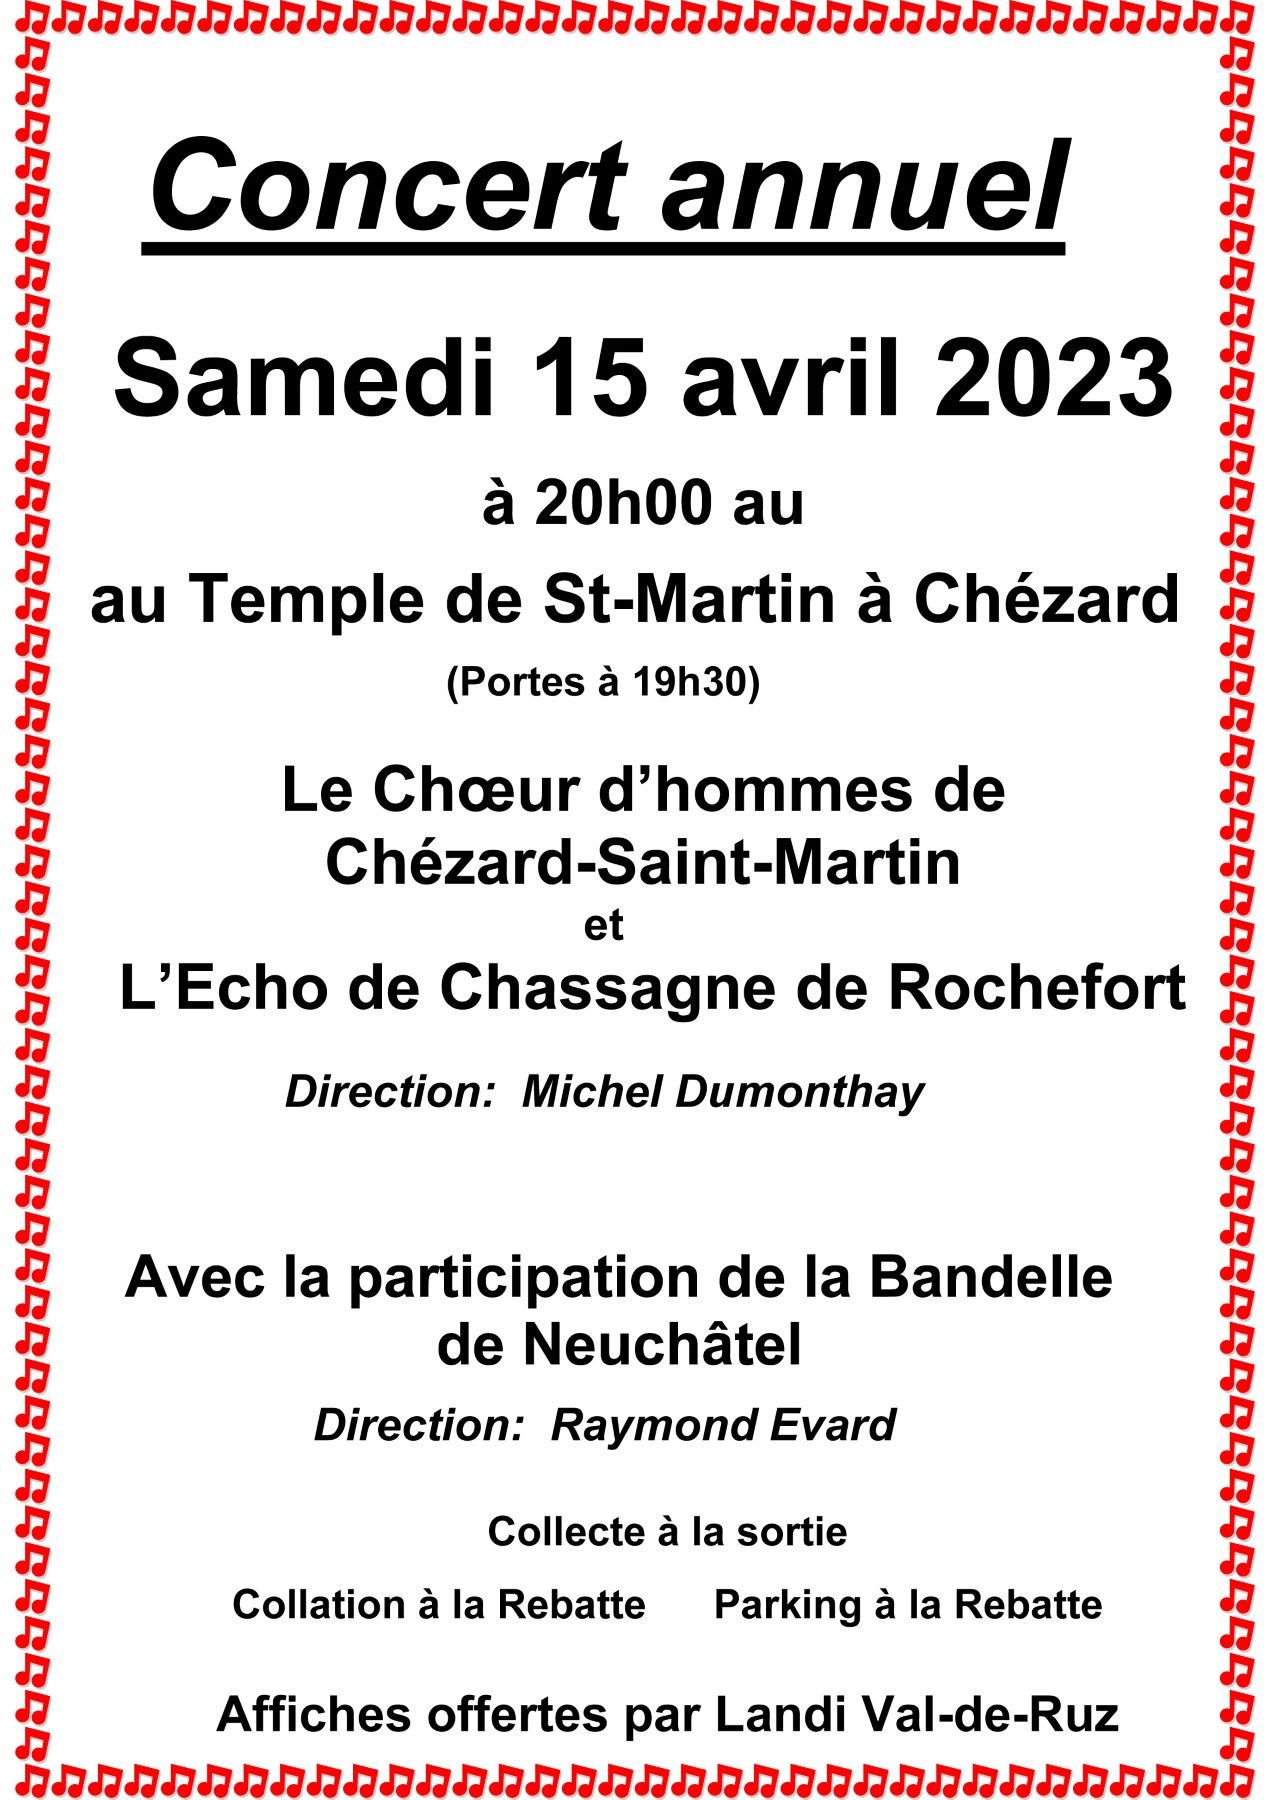 Choeur d’Hommes de Chézard-St-Martin et l’Echo de Chassagne de Rochefort